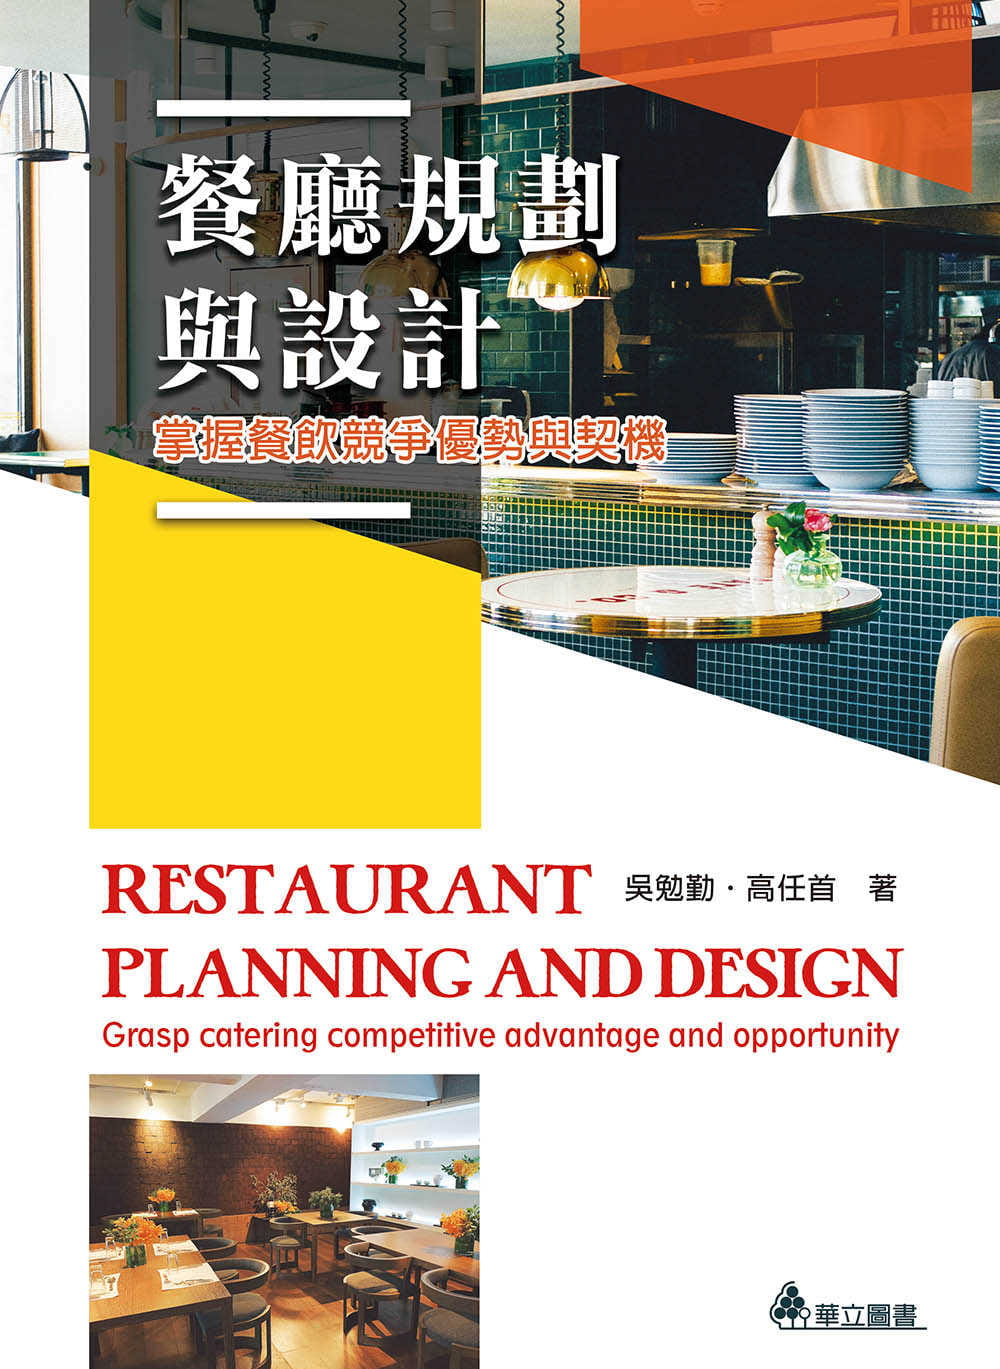 餐廳規劃與設計：掌握餐飲競爭優勢與契機